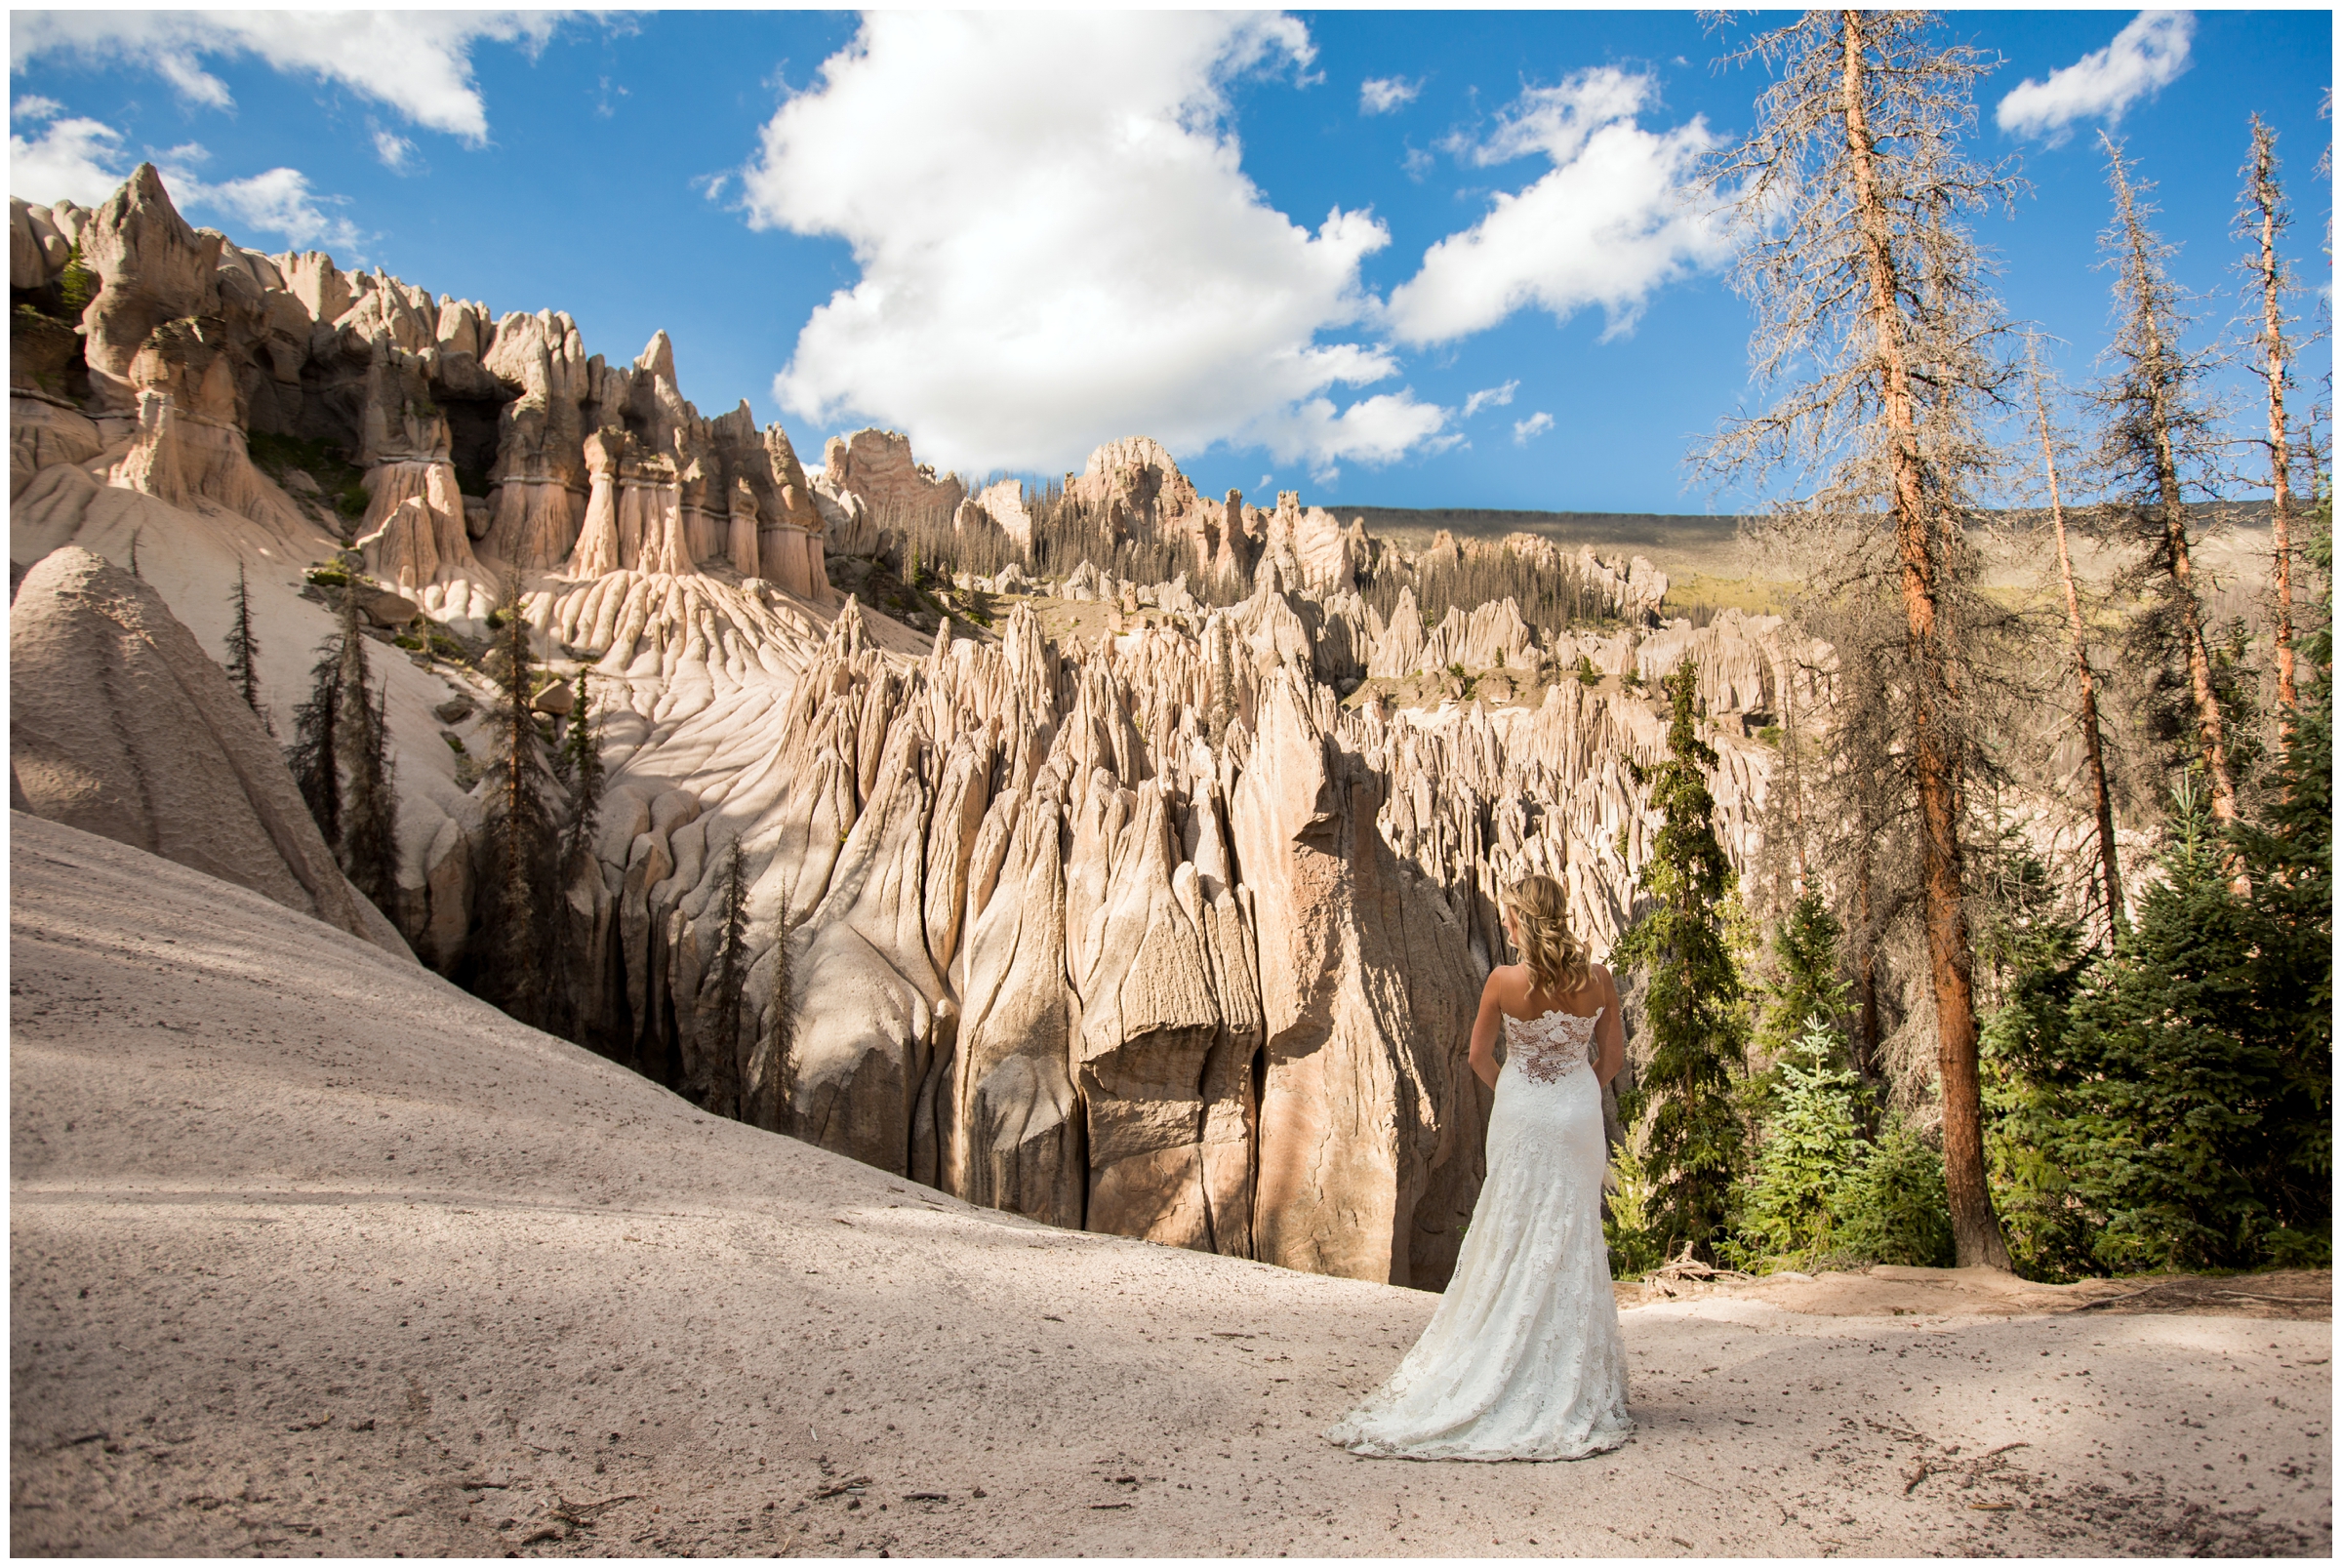 Colorado adventure elopement photos at Wheeler Geologic Area in Creede, CO.